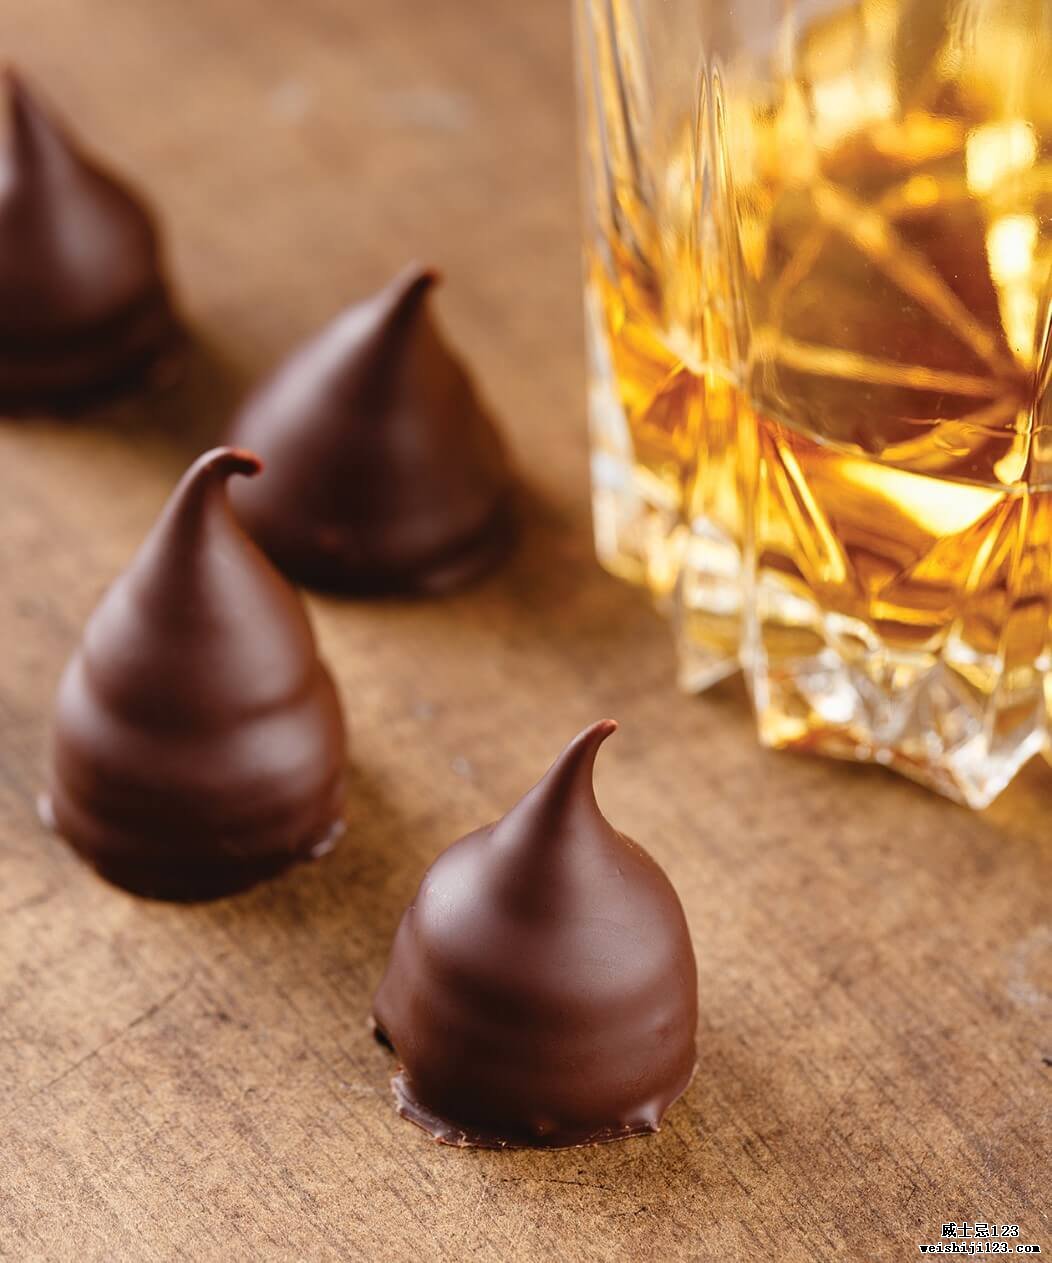 巧克力和威士忌在一起很诱人